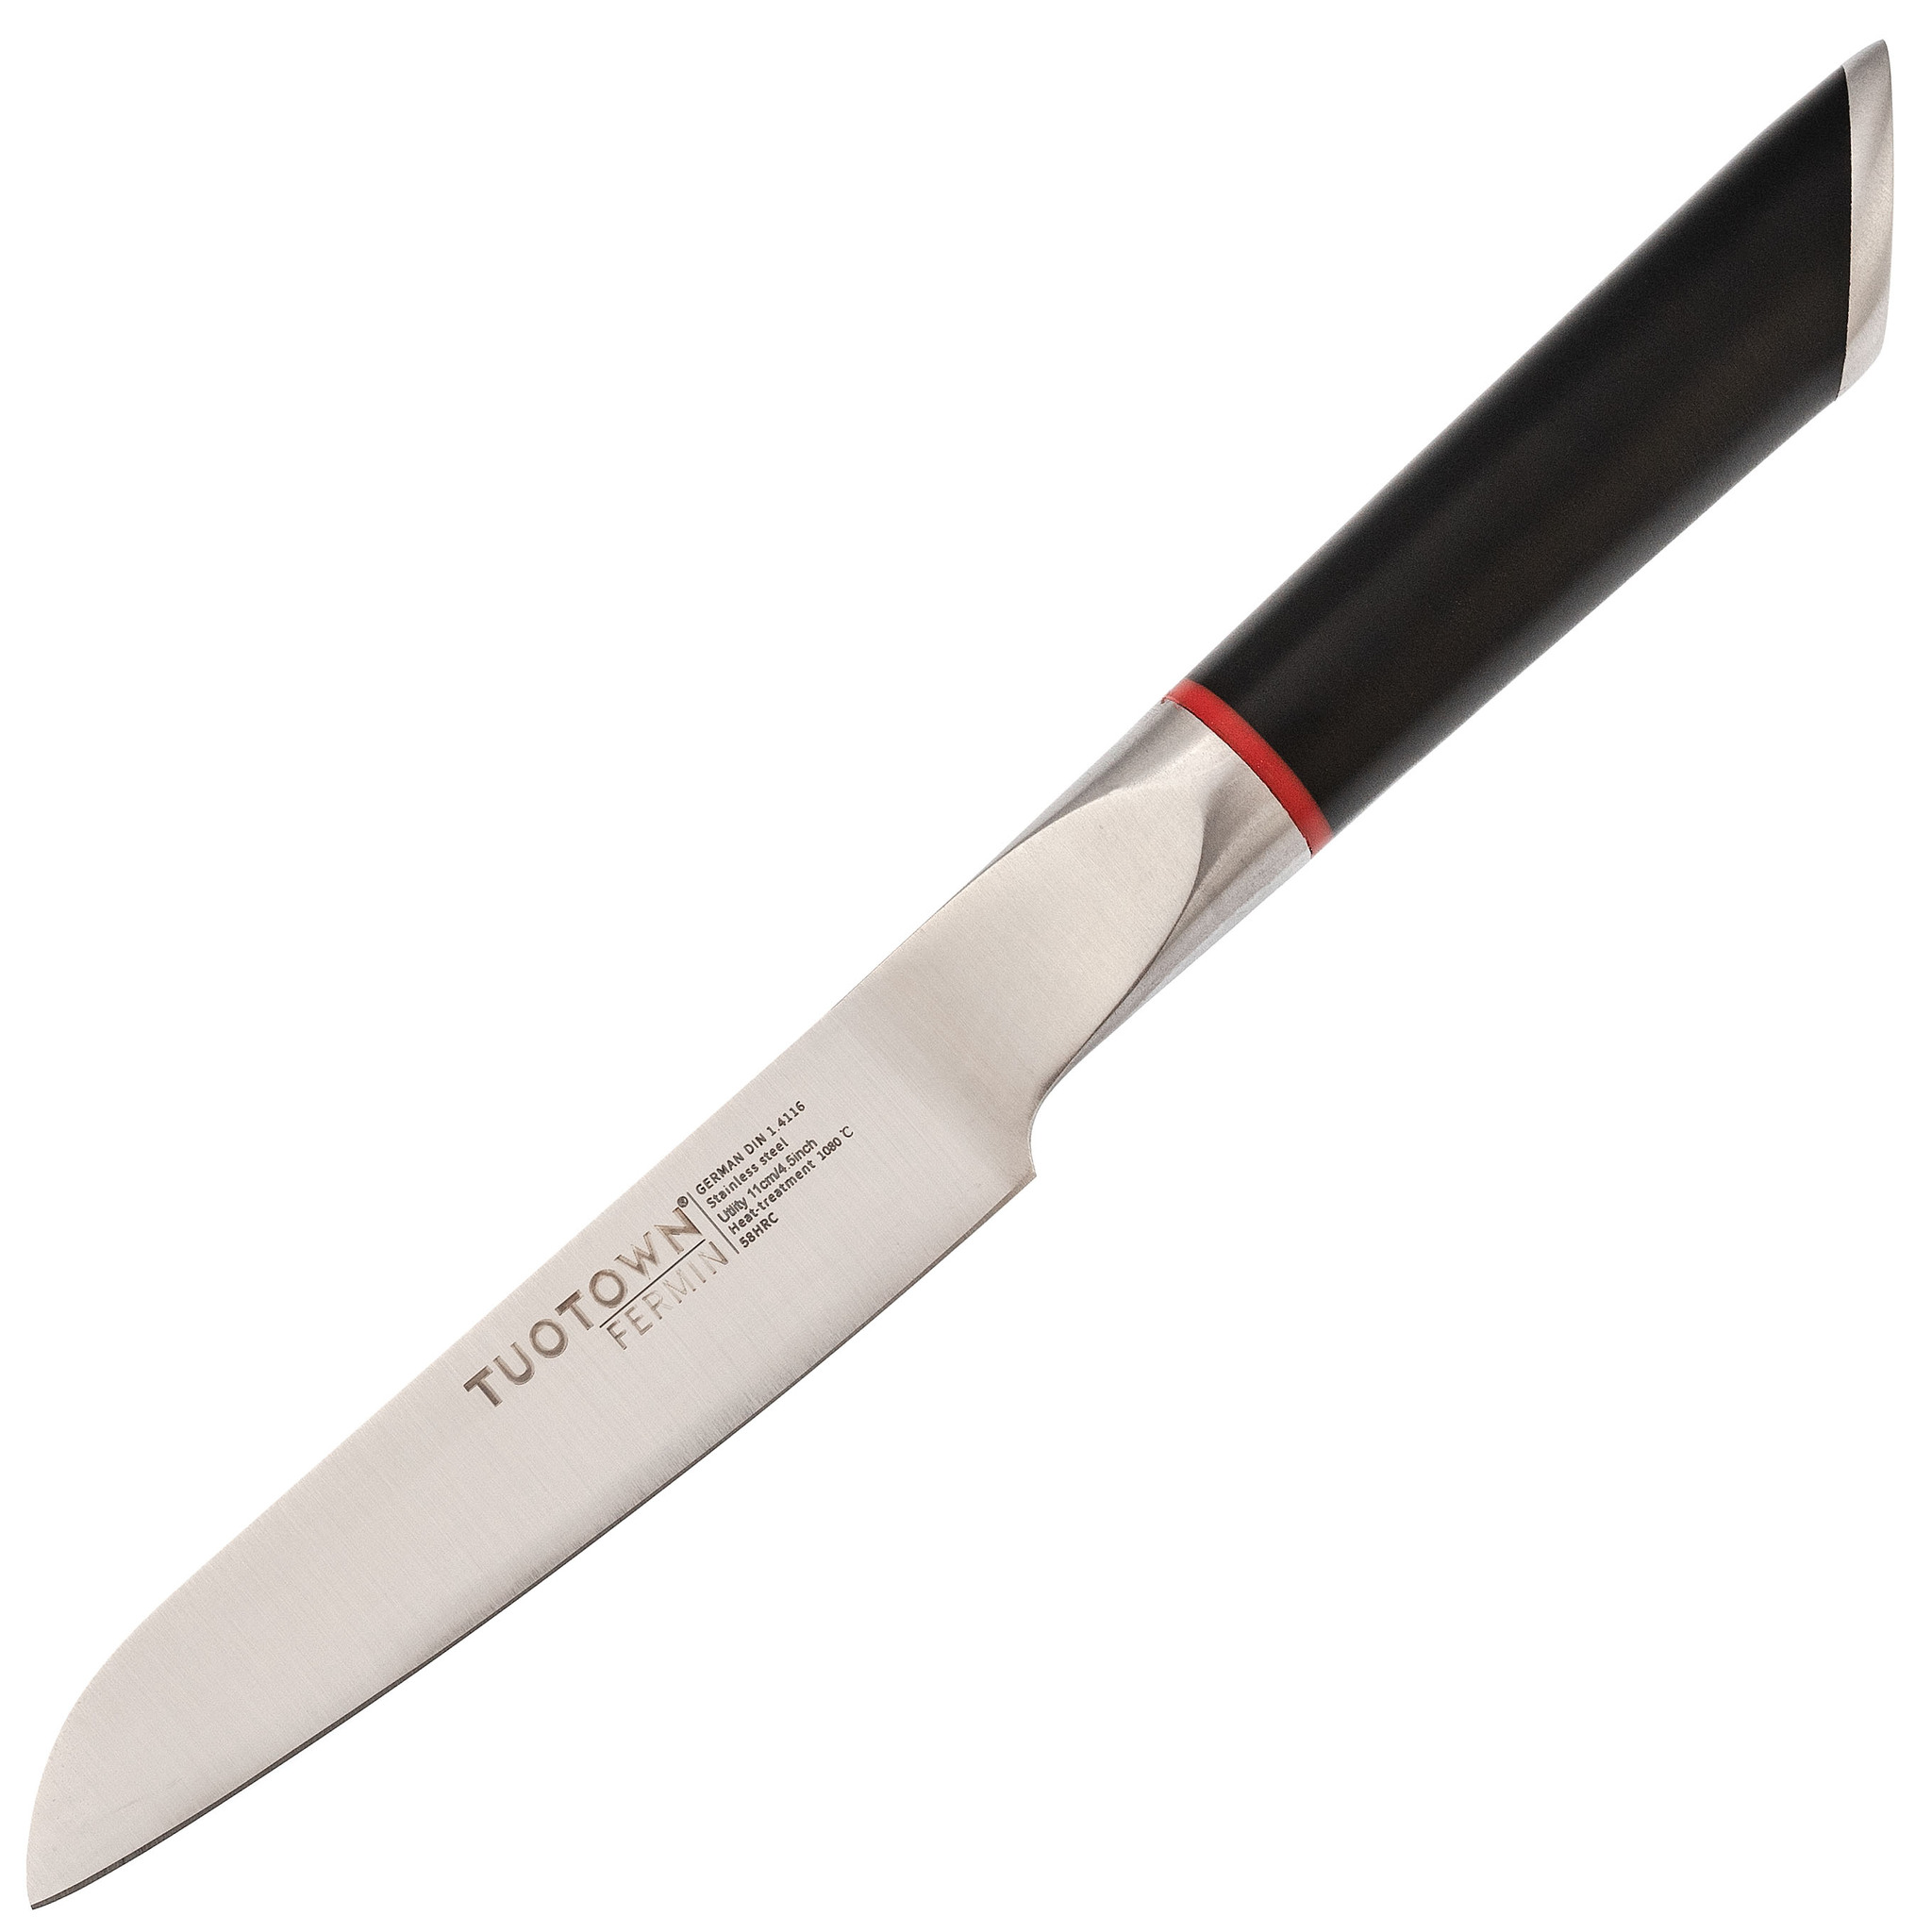 Кухонный нож универсальный, Tuotown серия Fermin, сталь 1.4116, рукоять пластик универсальный кухонный нож ladina